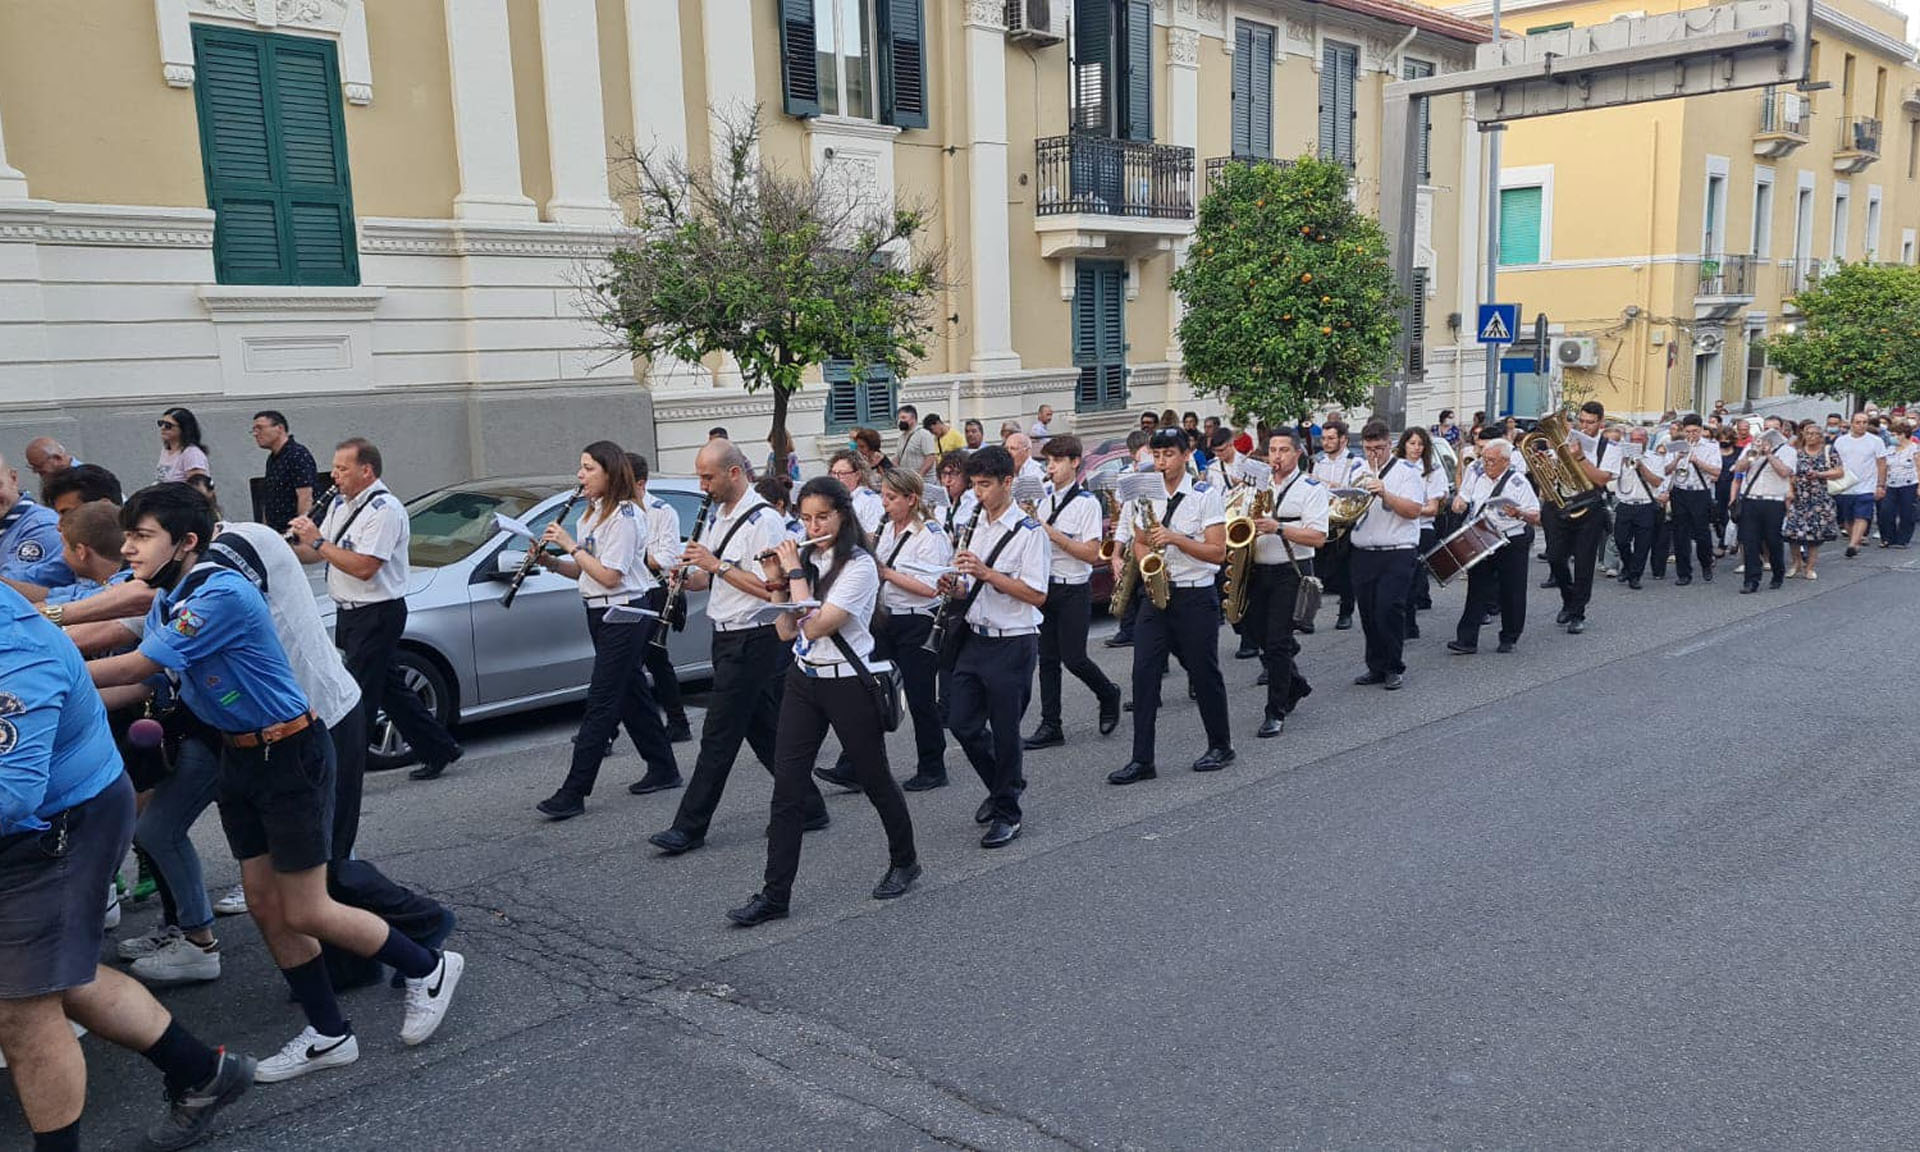 Corpo Bandistico “S. Cecilia” – Città di Villafranca Tirrena